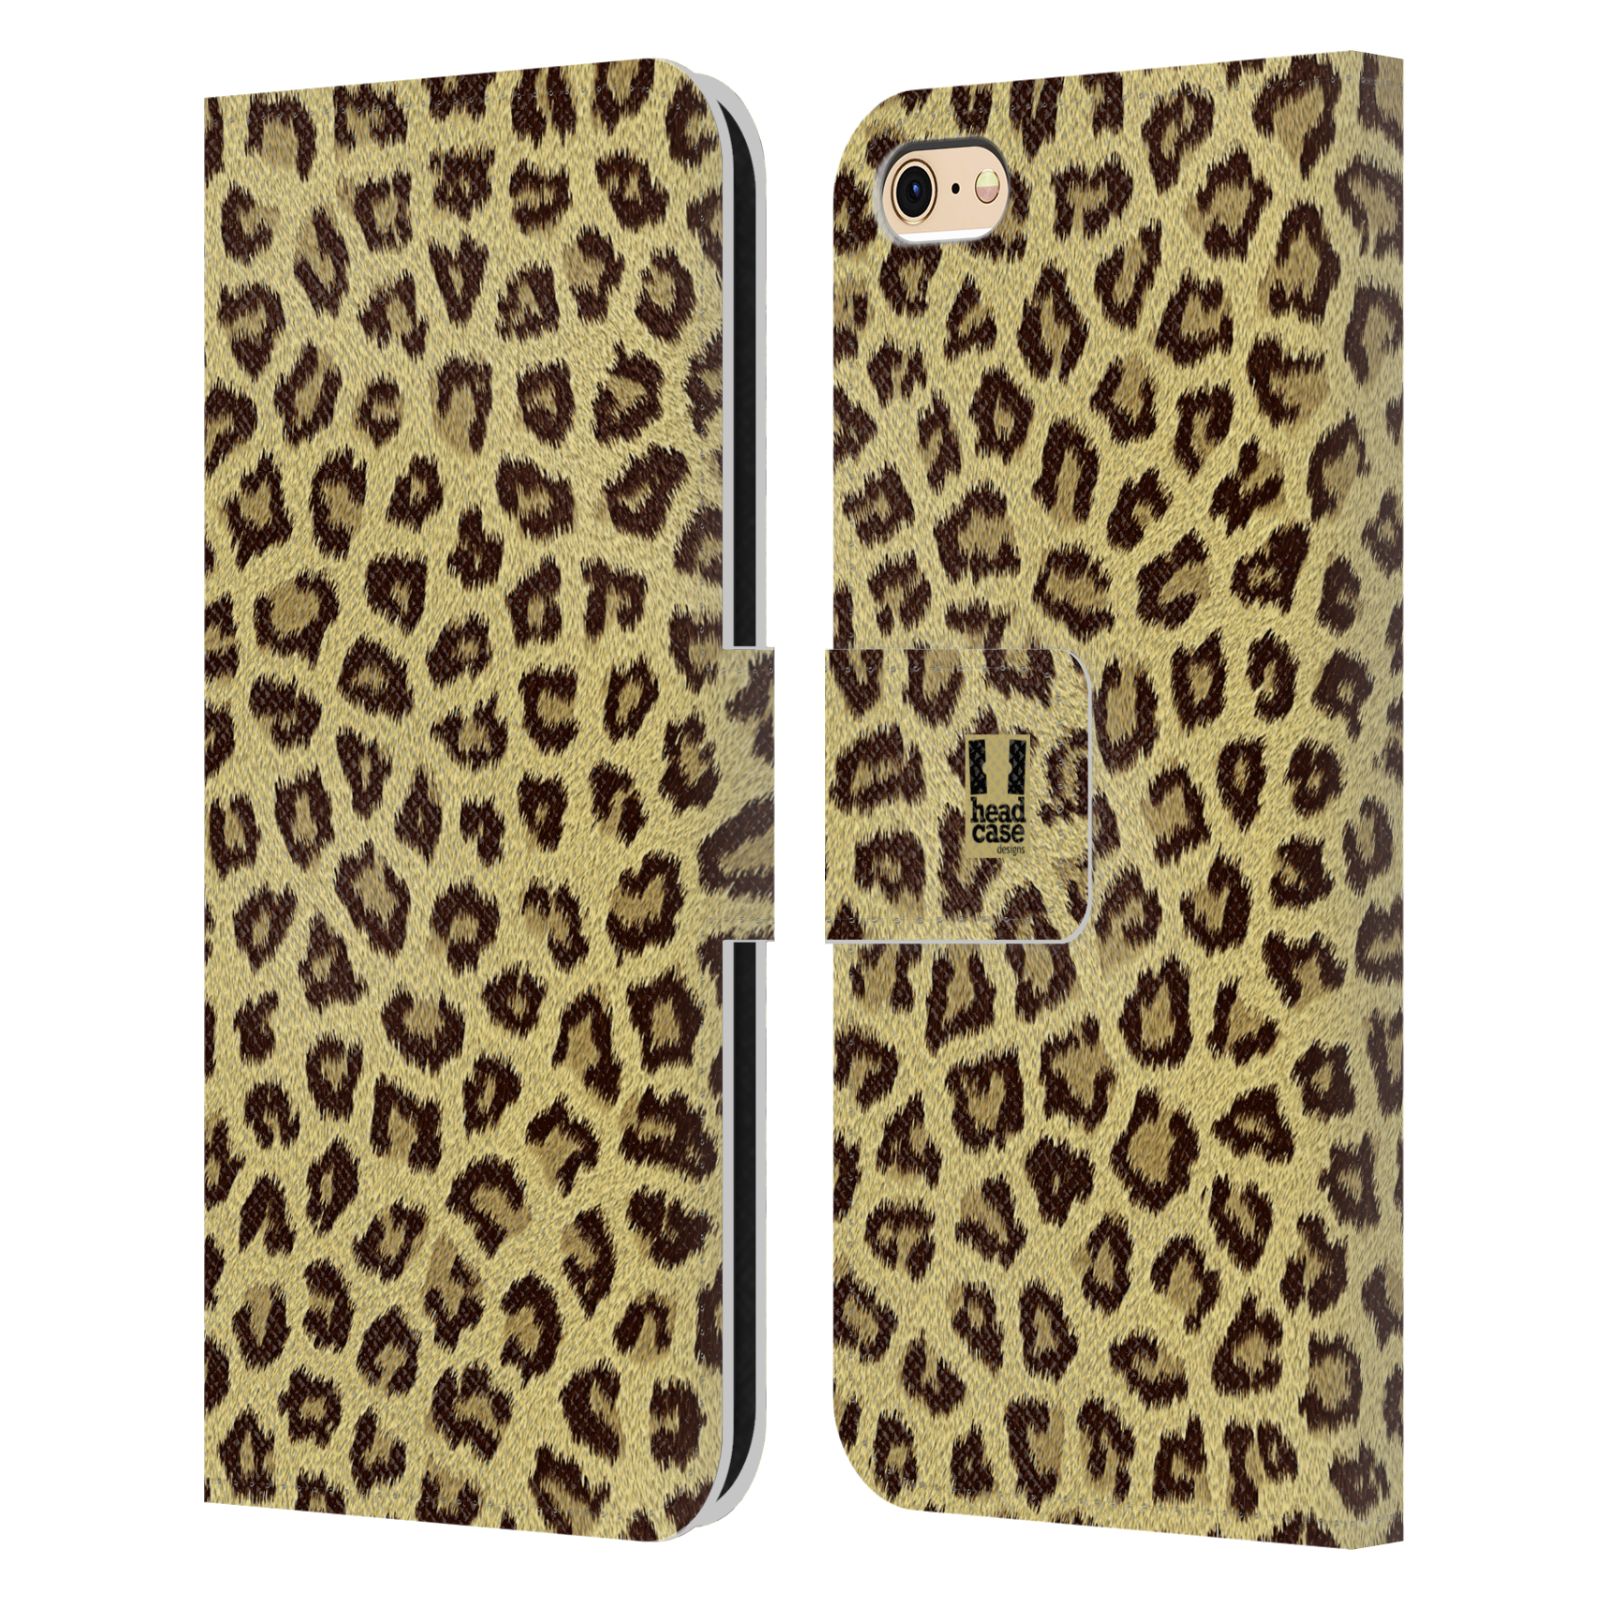 HEAD CASE Flipové pouzdro pro mobil Apple Iphone 6/6s zvíře srst divoká kolekce jaguár, gepard